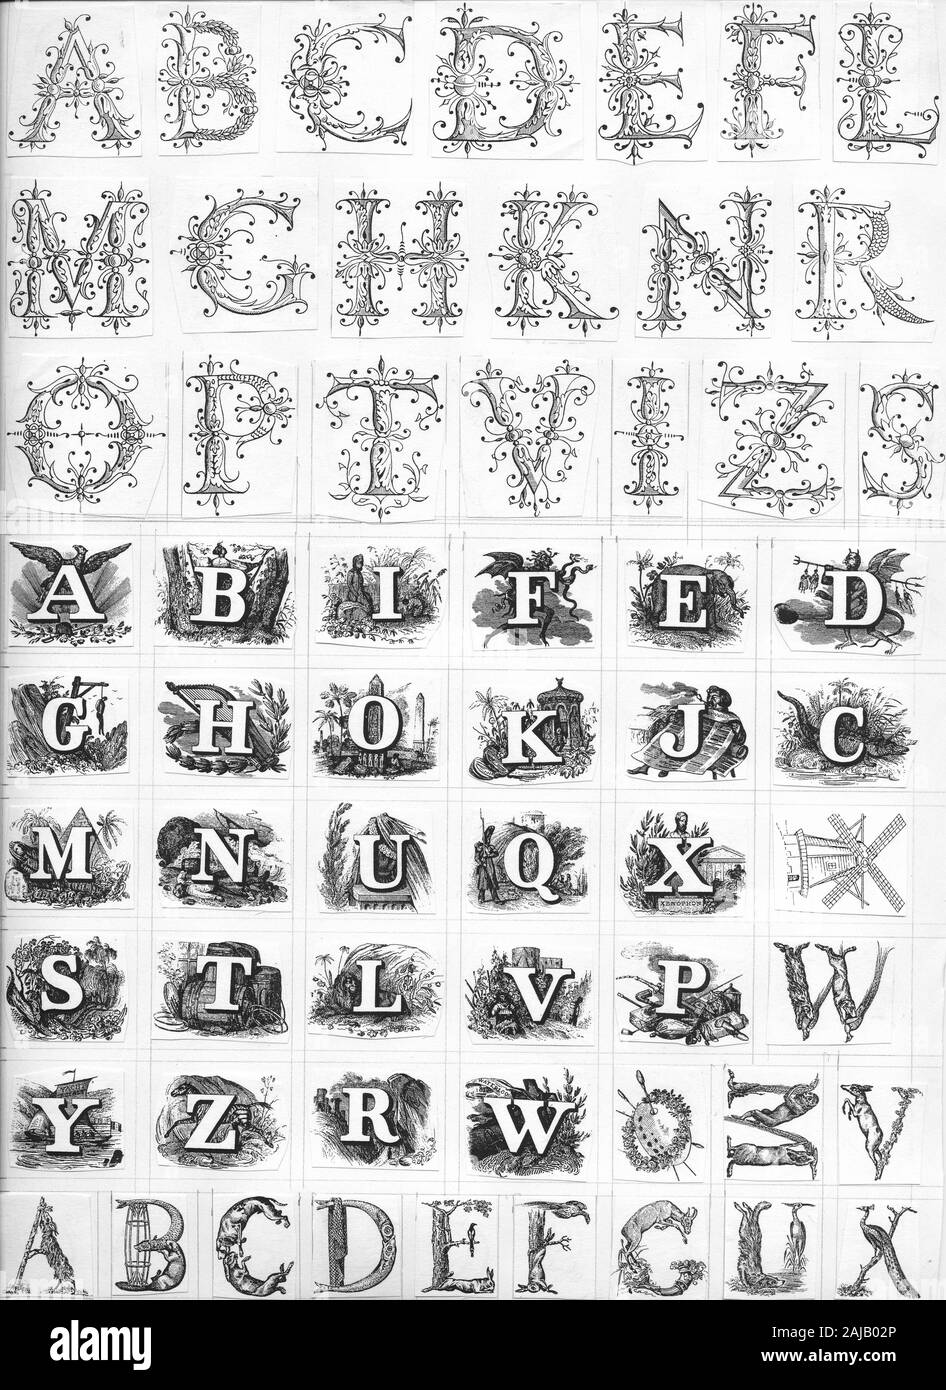 Vignette letters templates for cliché making, Vignetten Buchstaben ...